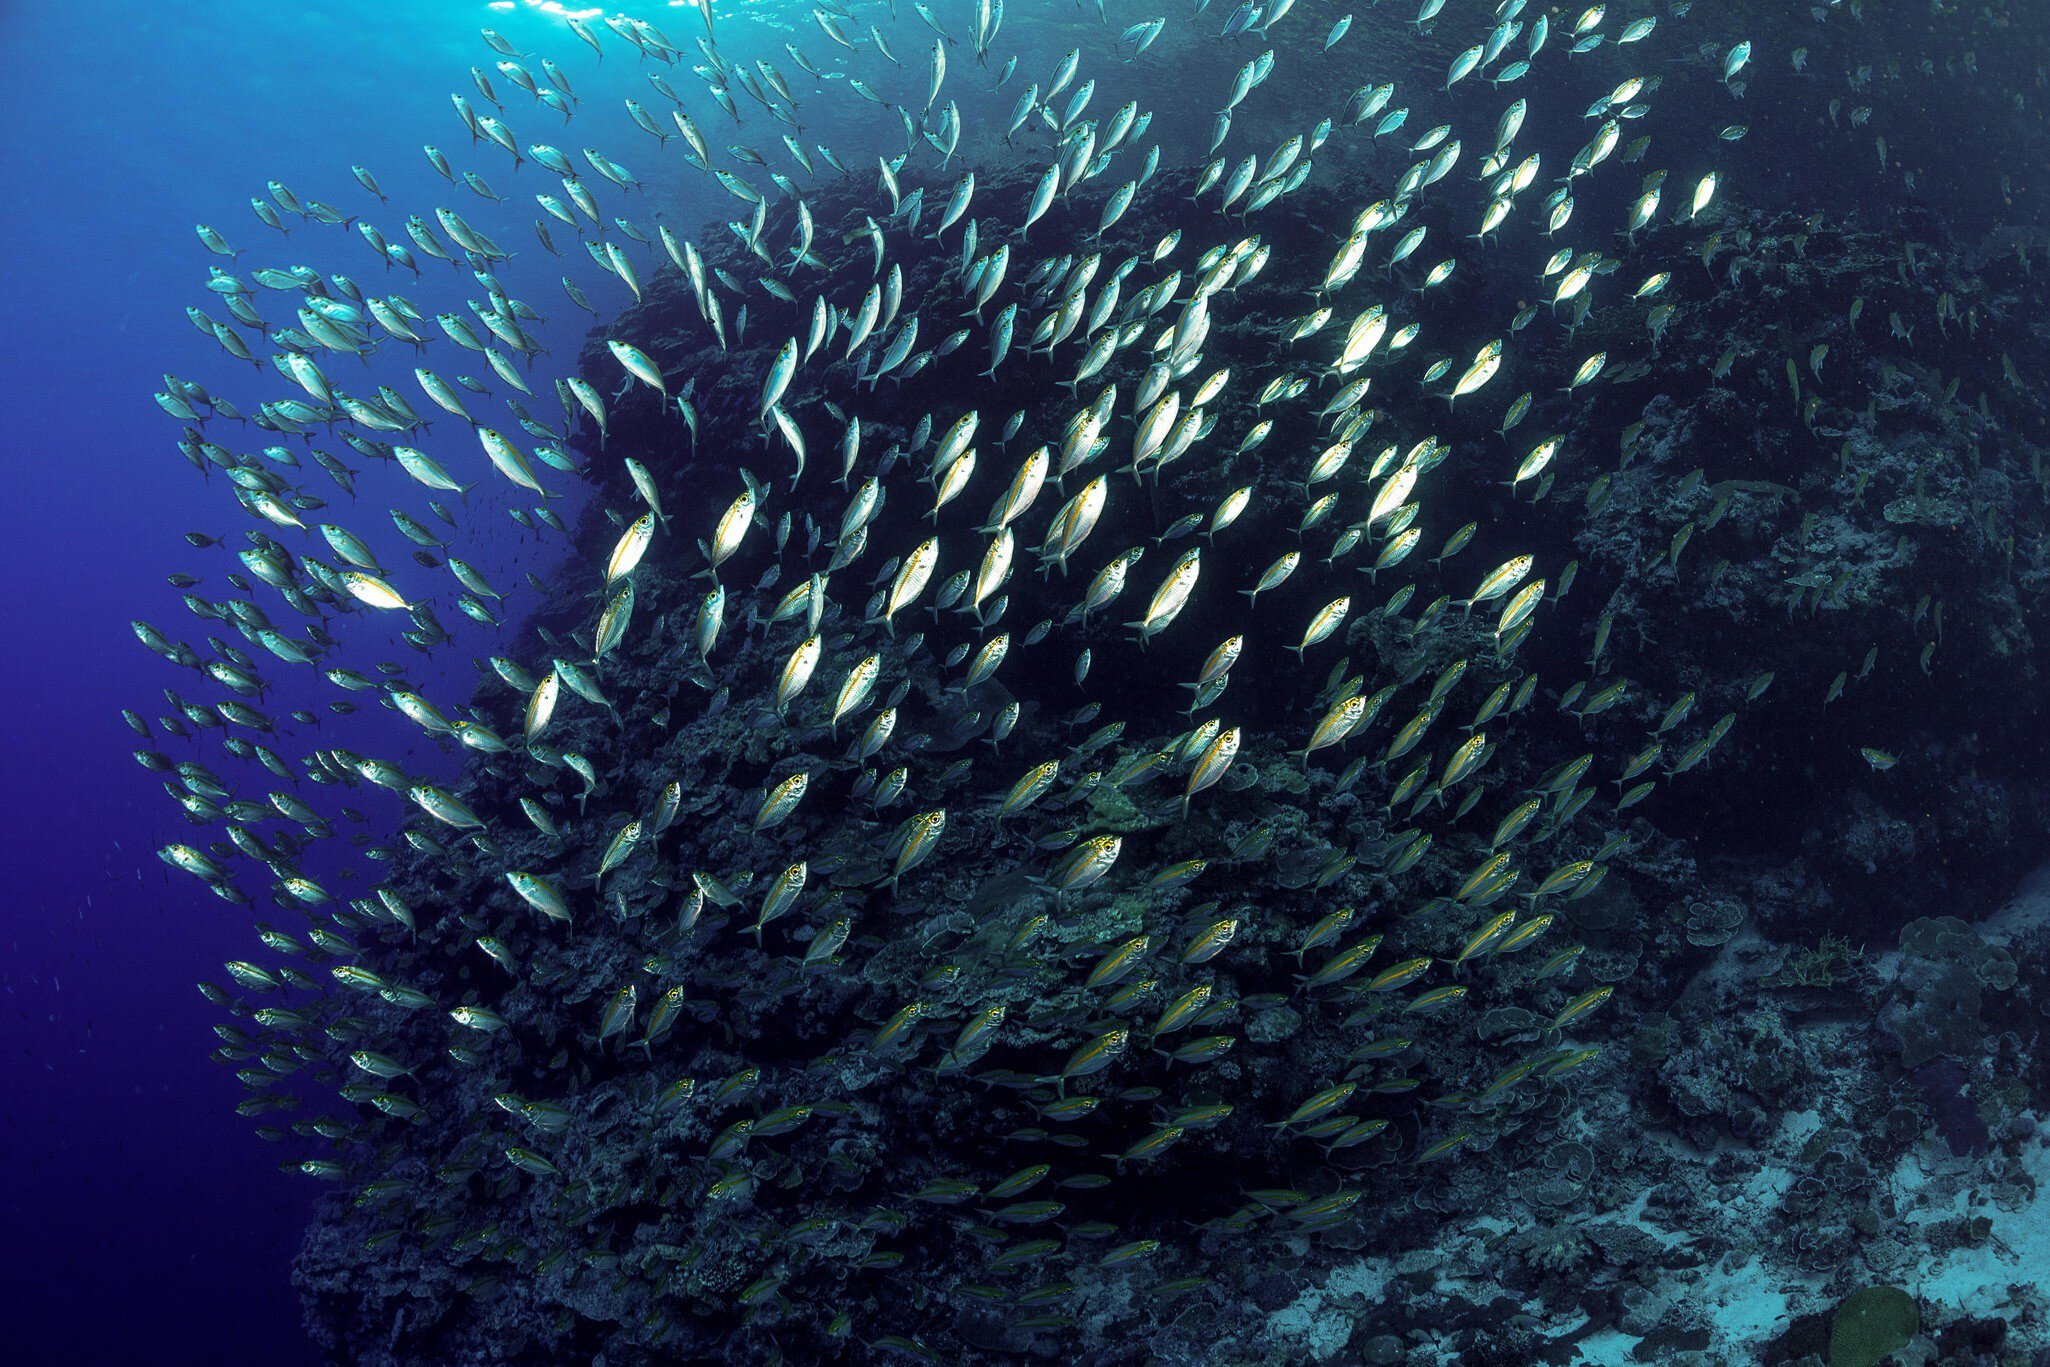 Ocean Image Bank, COP28 image